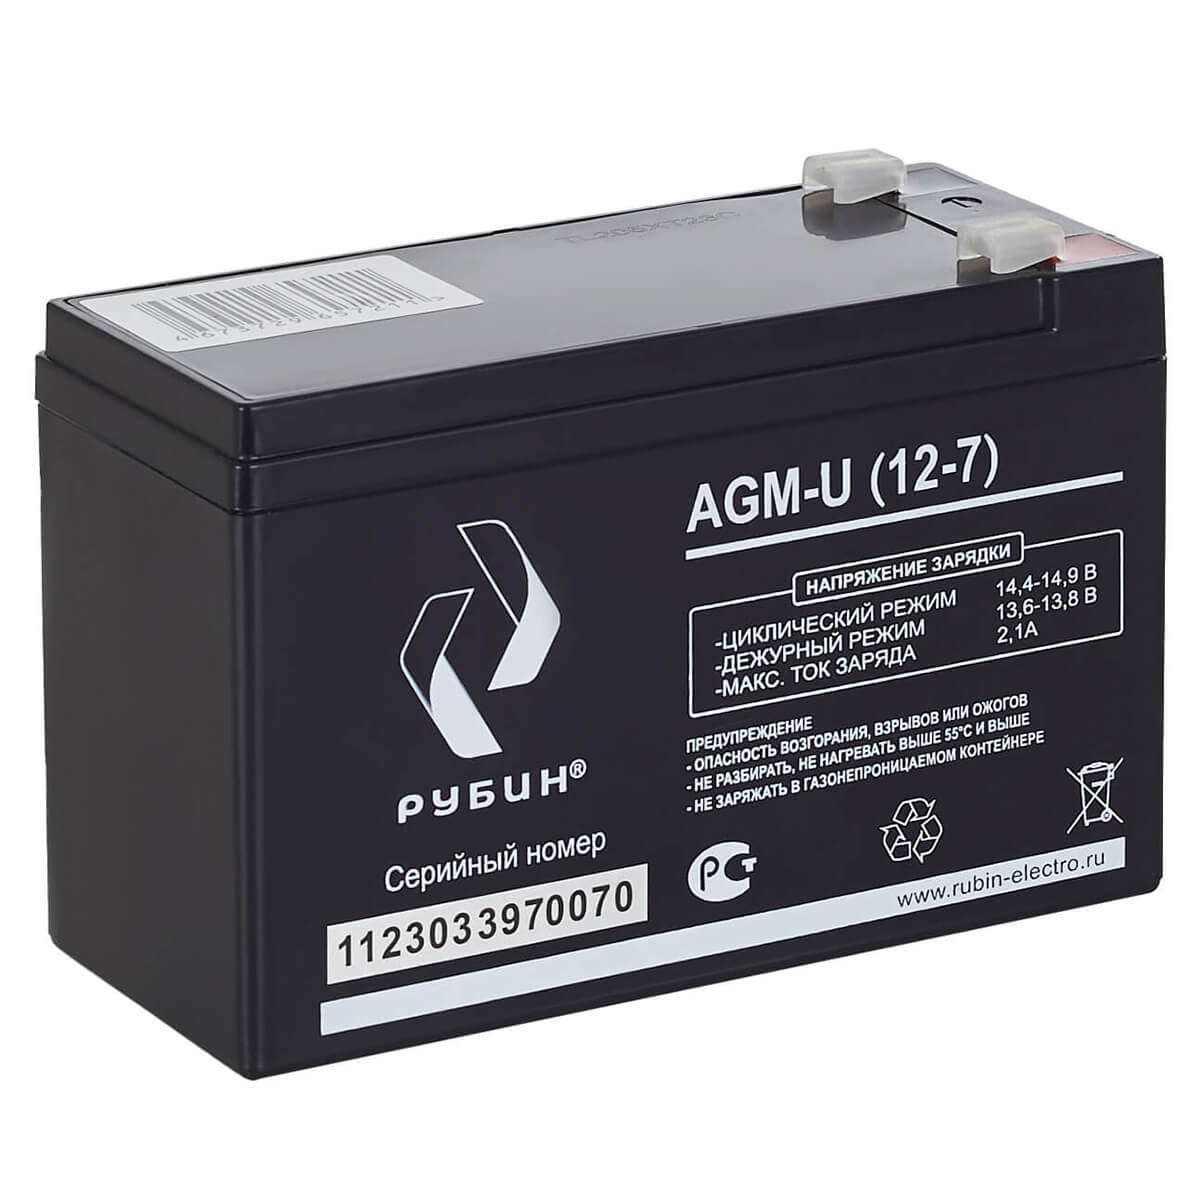 Рубин AGM-U (12-7)